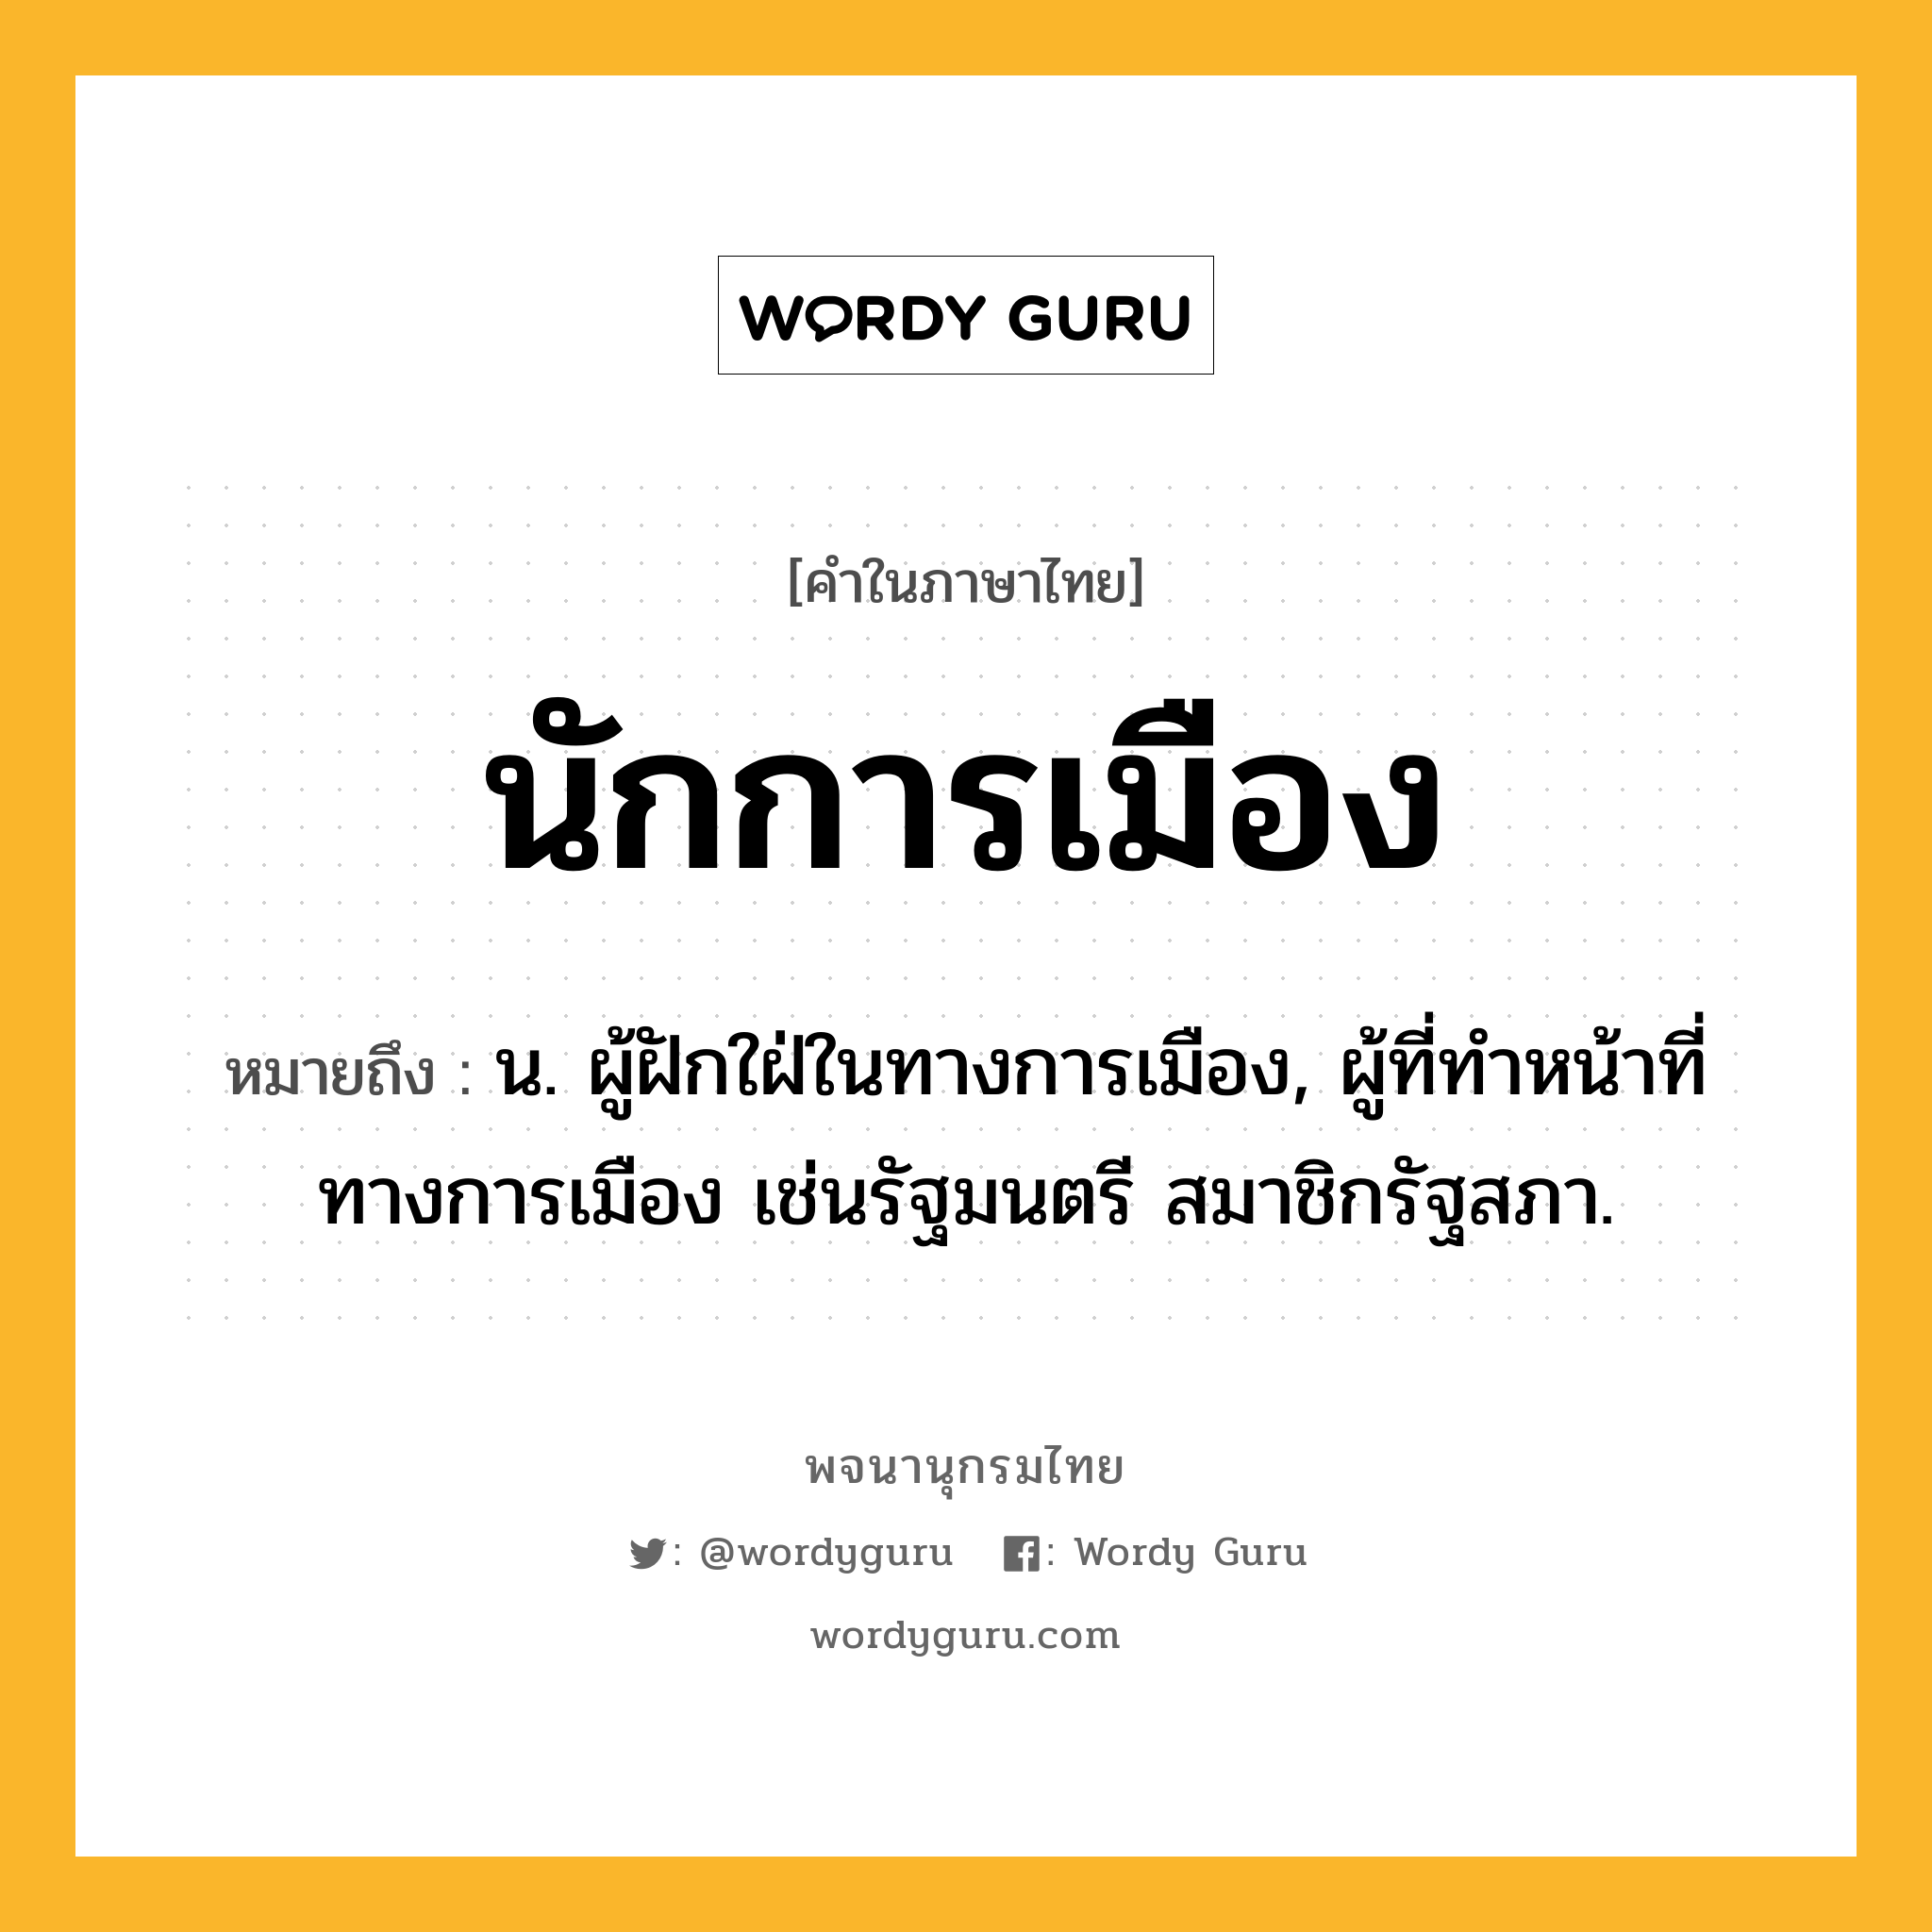 นักการเมือง ความหมาย หมายถึงอะไร?, คำในภาษาไทย นักการเมือง หมายถึง น. ผู้ฝักใฝ่ในทางการเมือง, ผู้ที่ทําหน้าที่ทางการเมือง เช่นรัฐมนตรี สมาชิกรัฐสภา.